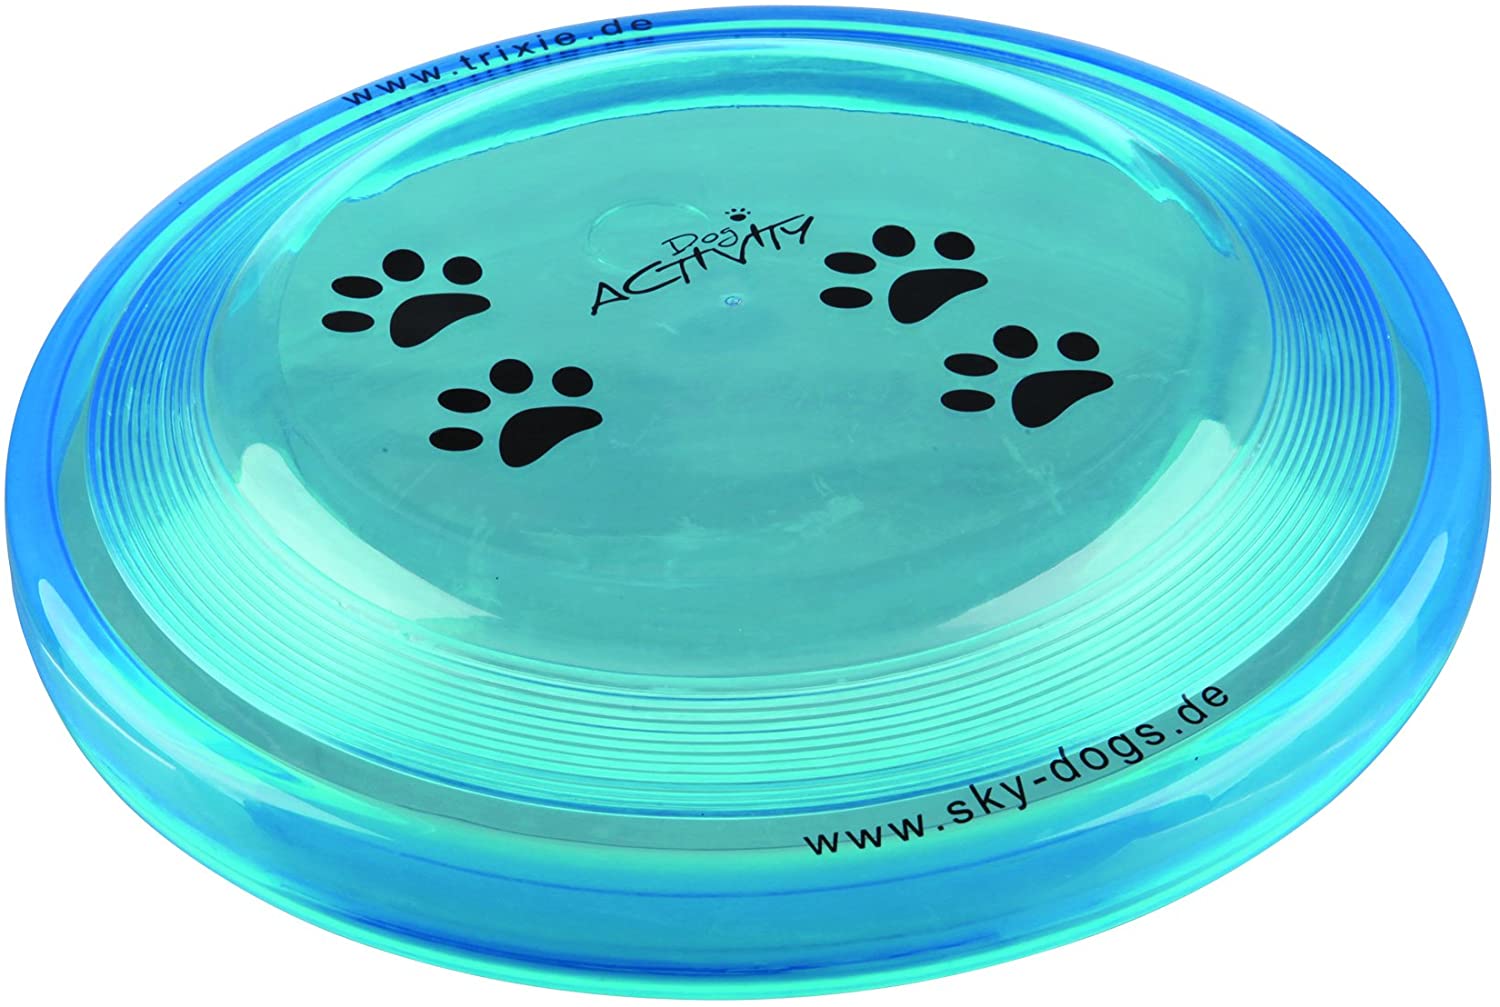  Perro actividad Disco Bite prueba Frisbee perrito Formación recuperar juguete dos tamaños, Colores Surtidos 